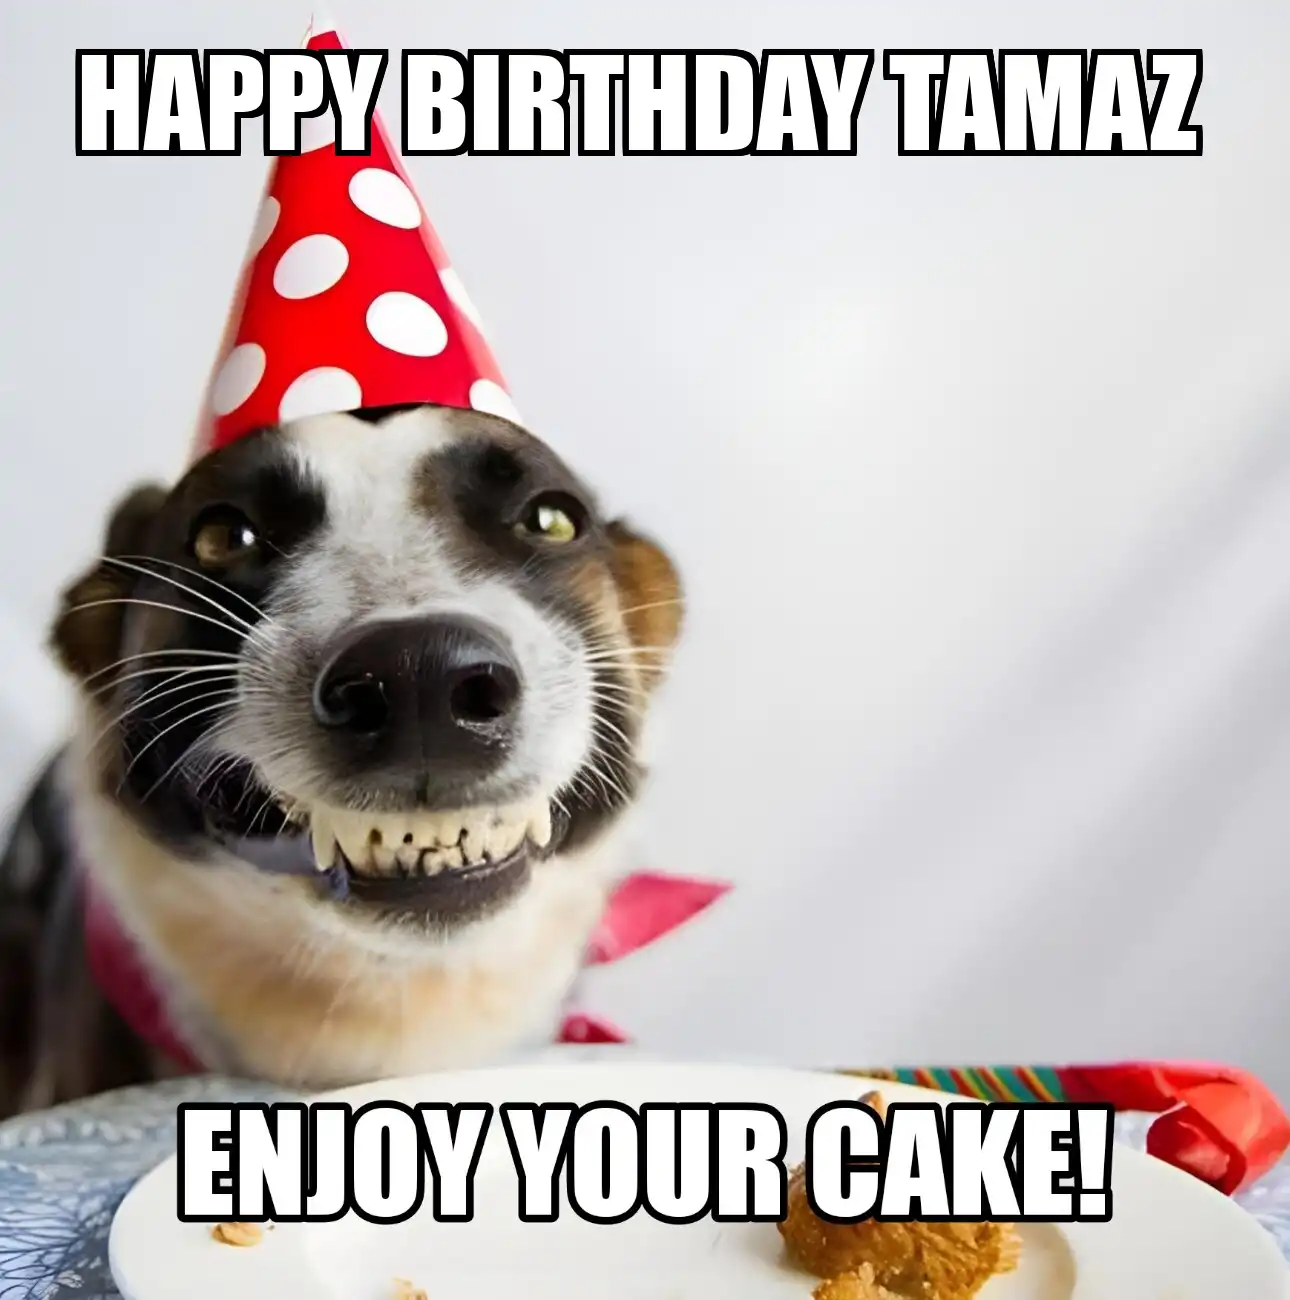 Happy Birthday Tamaz Enjoy Your Cake Dog Meme